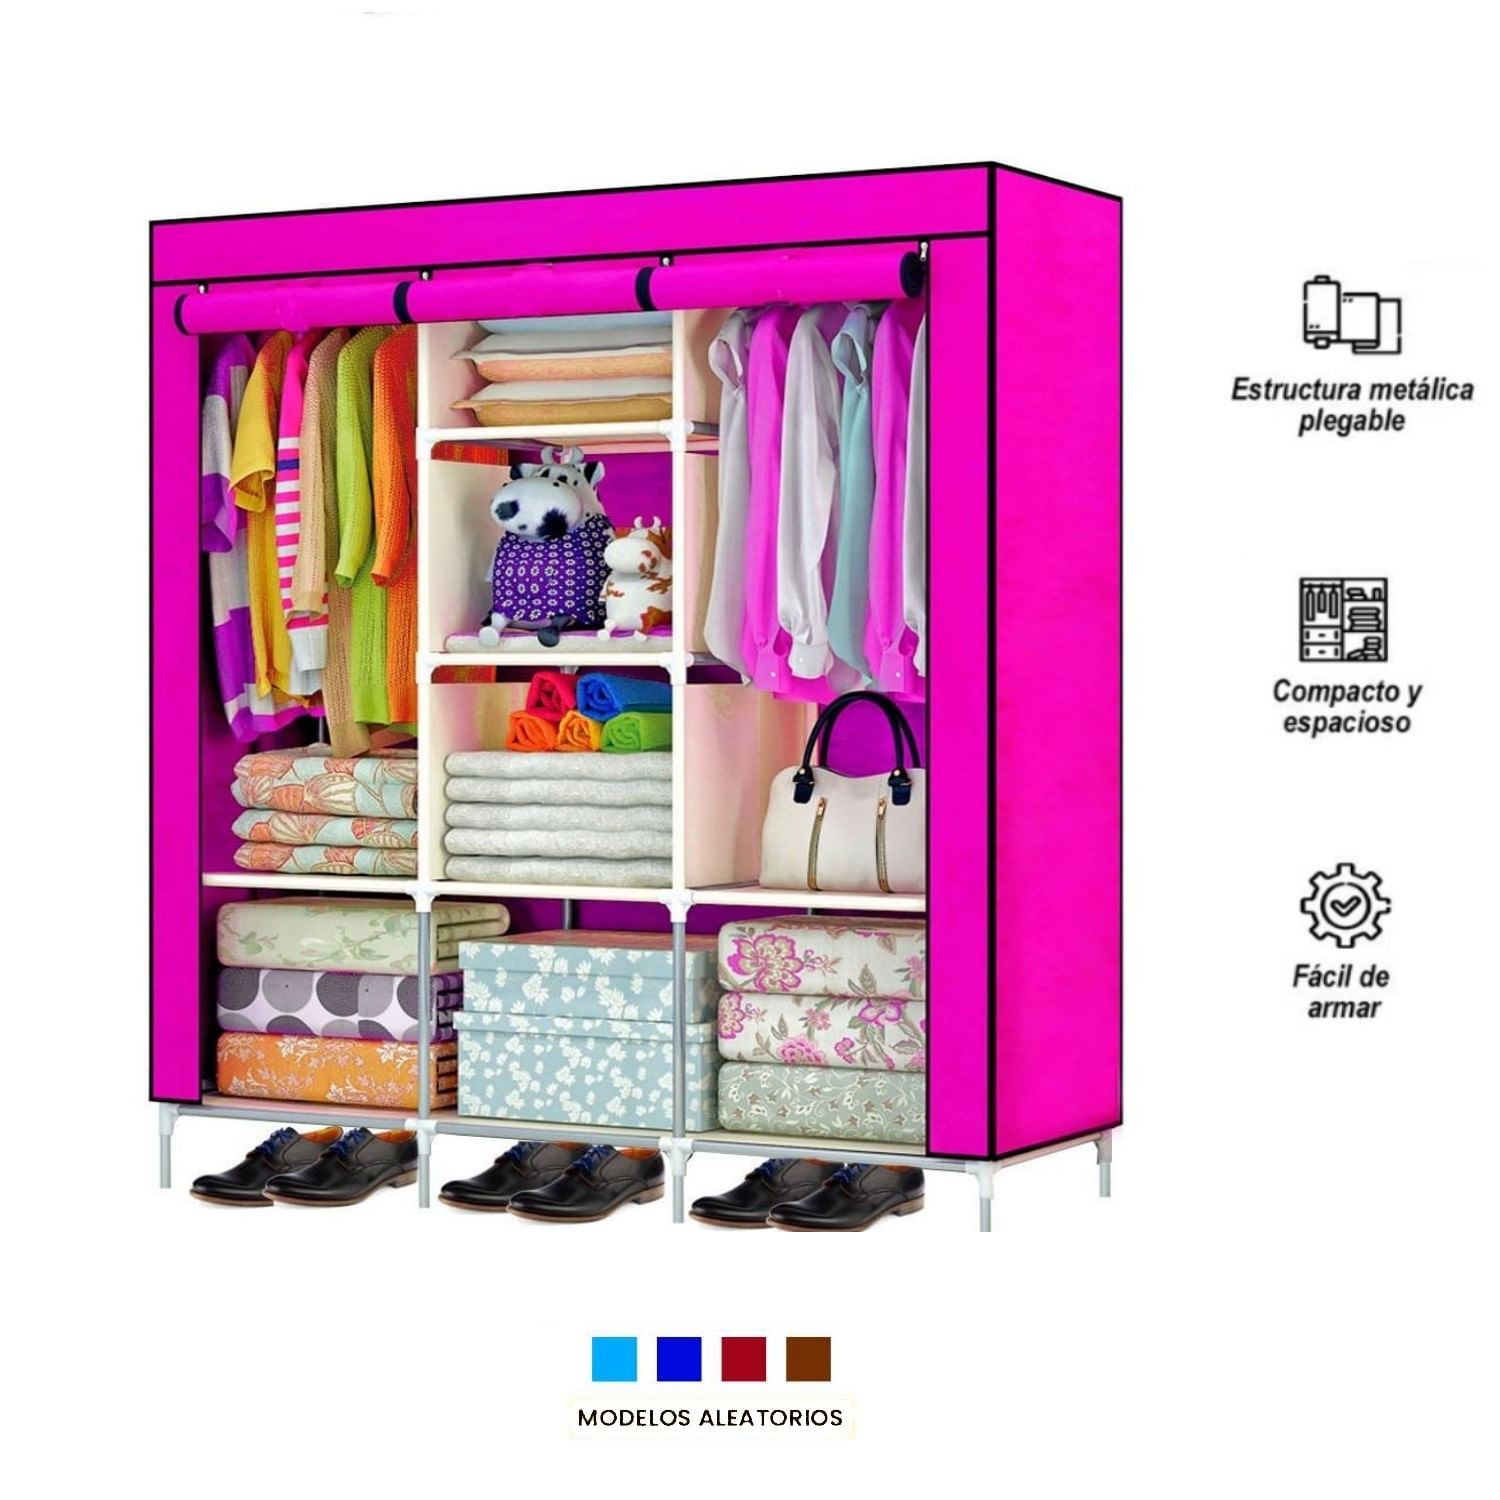 Encontramos un armario ropero barato y plegable en tres colores - Showroom